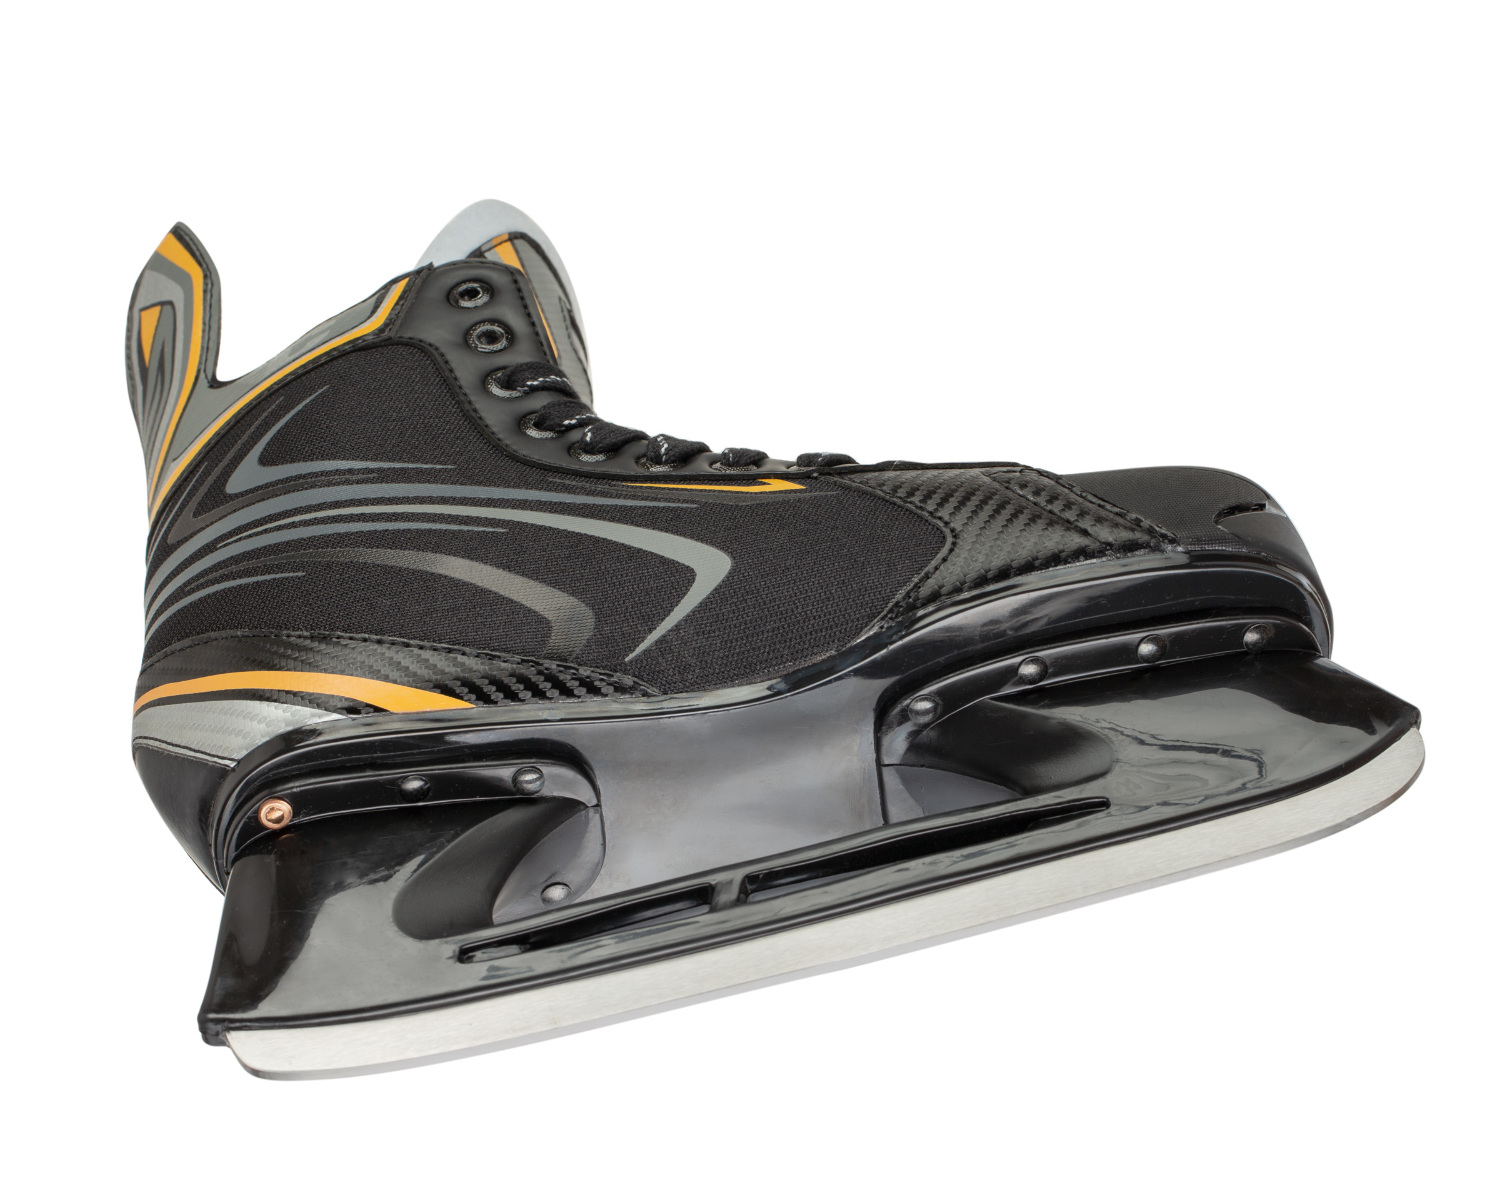 Erik Sports Canadian R50 Men's Ice Hockey Skates (Size 5.0) - image 2 of 5